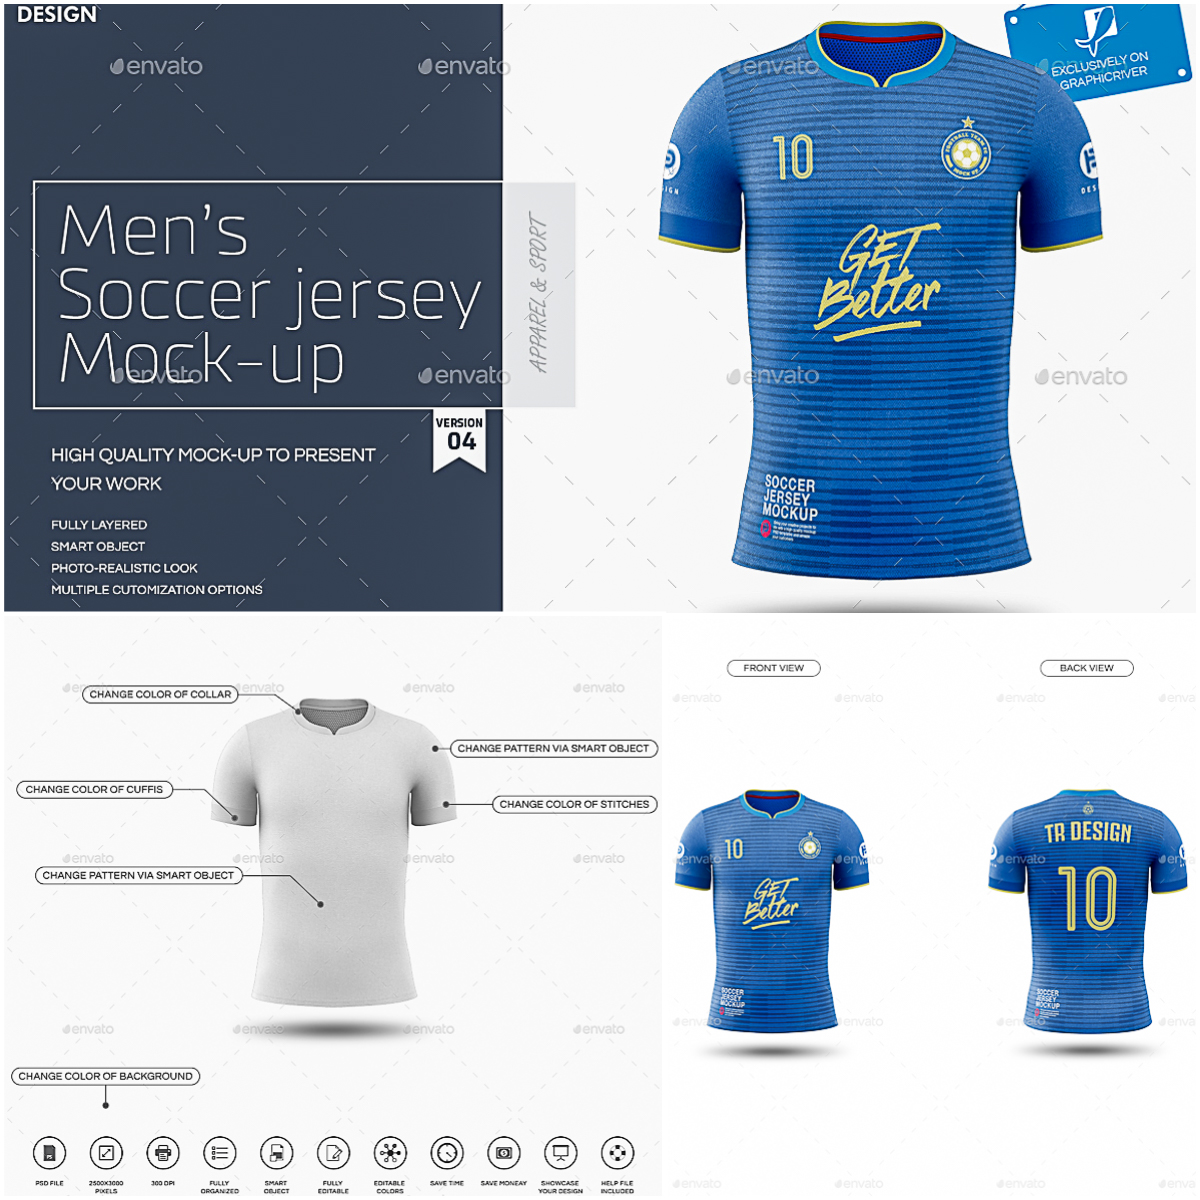 Download Men's Soccer Jersey Mockup | Free download